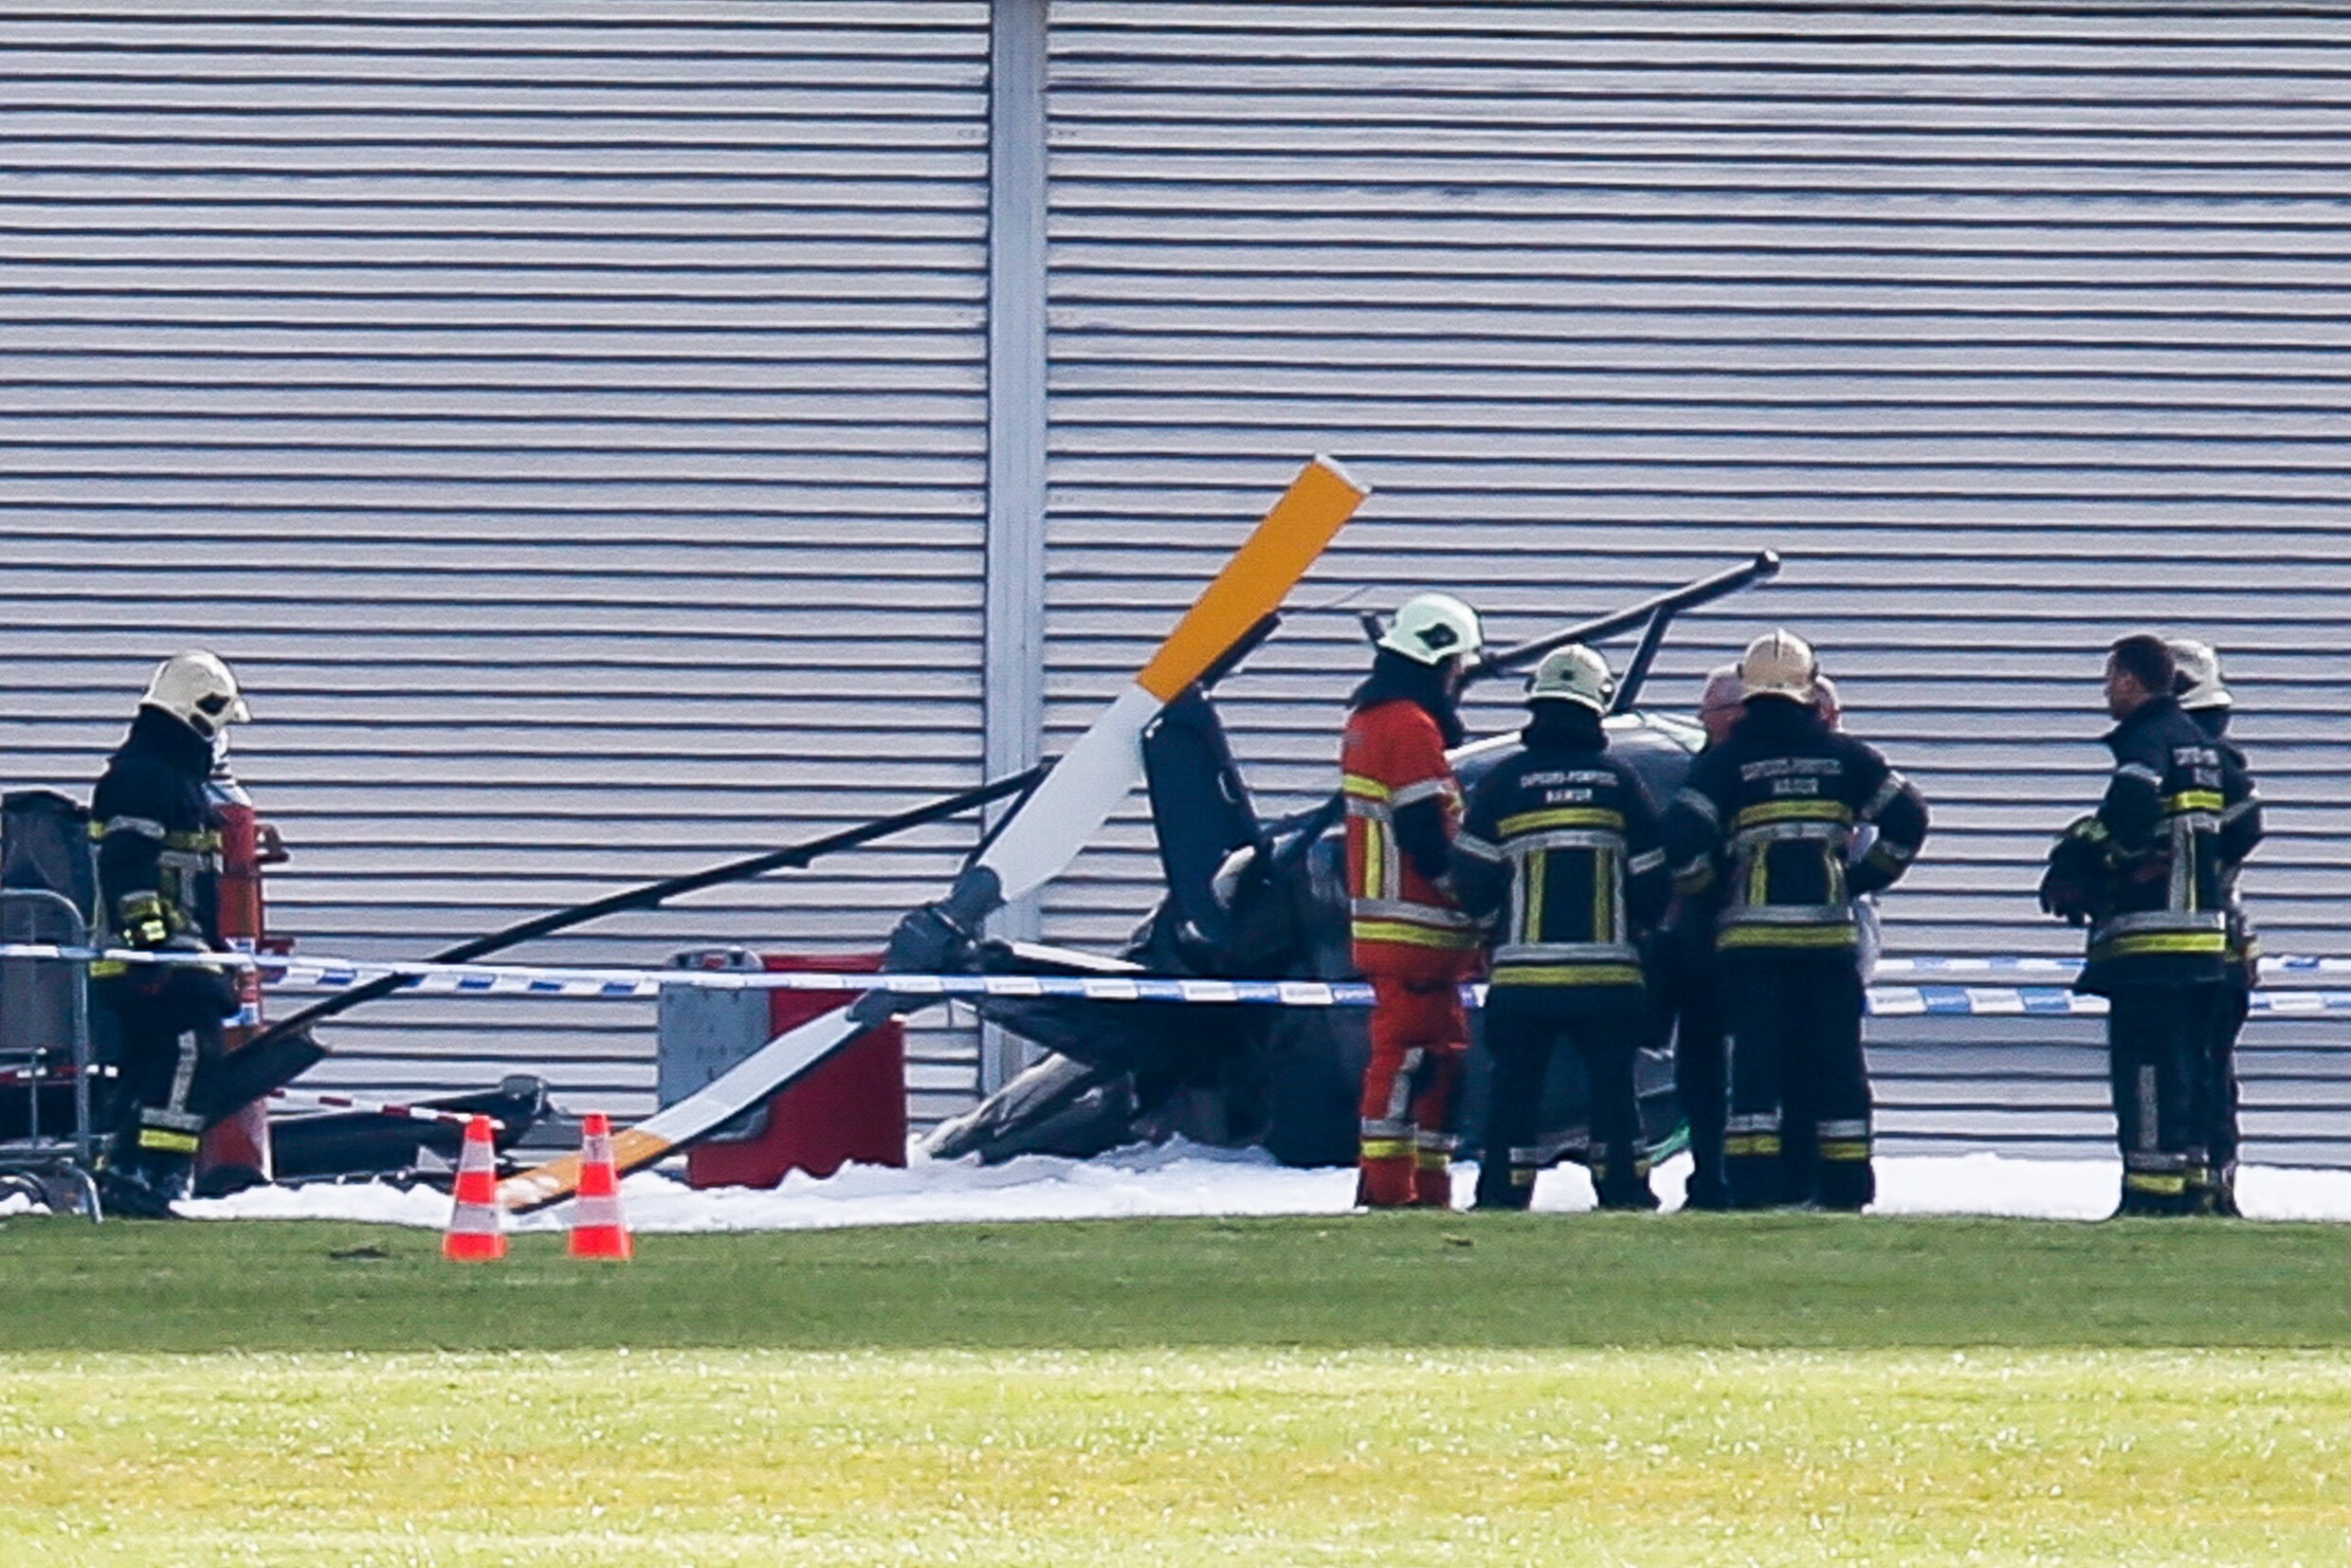 Helikopter stort vlak na opstijgen neer in Namen: drie vrouwen gewond